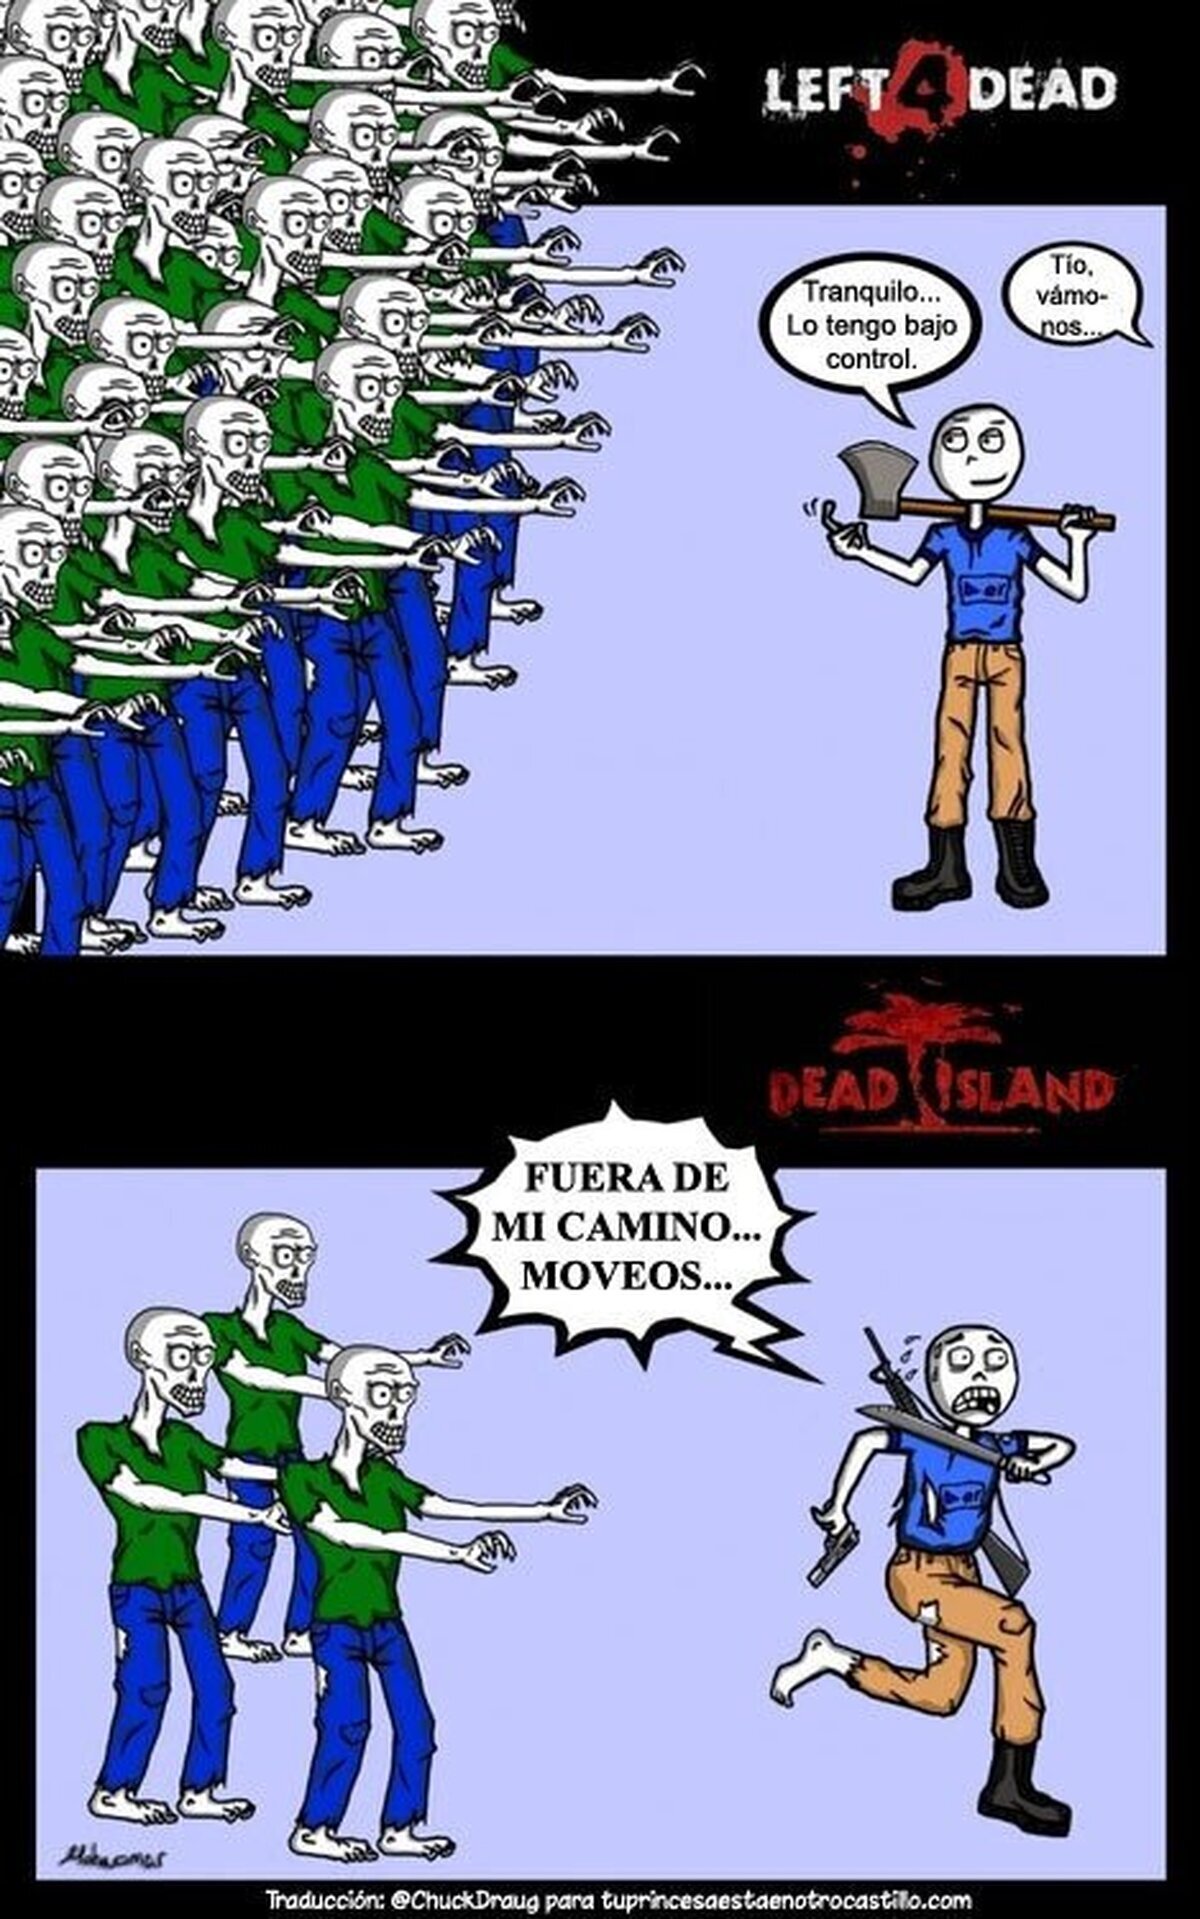 Diferencias entre los zombies del L4D y los del Dead Island